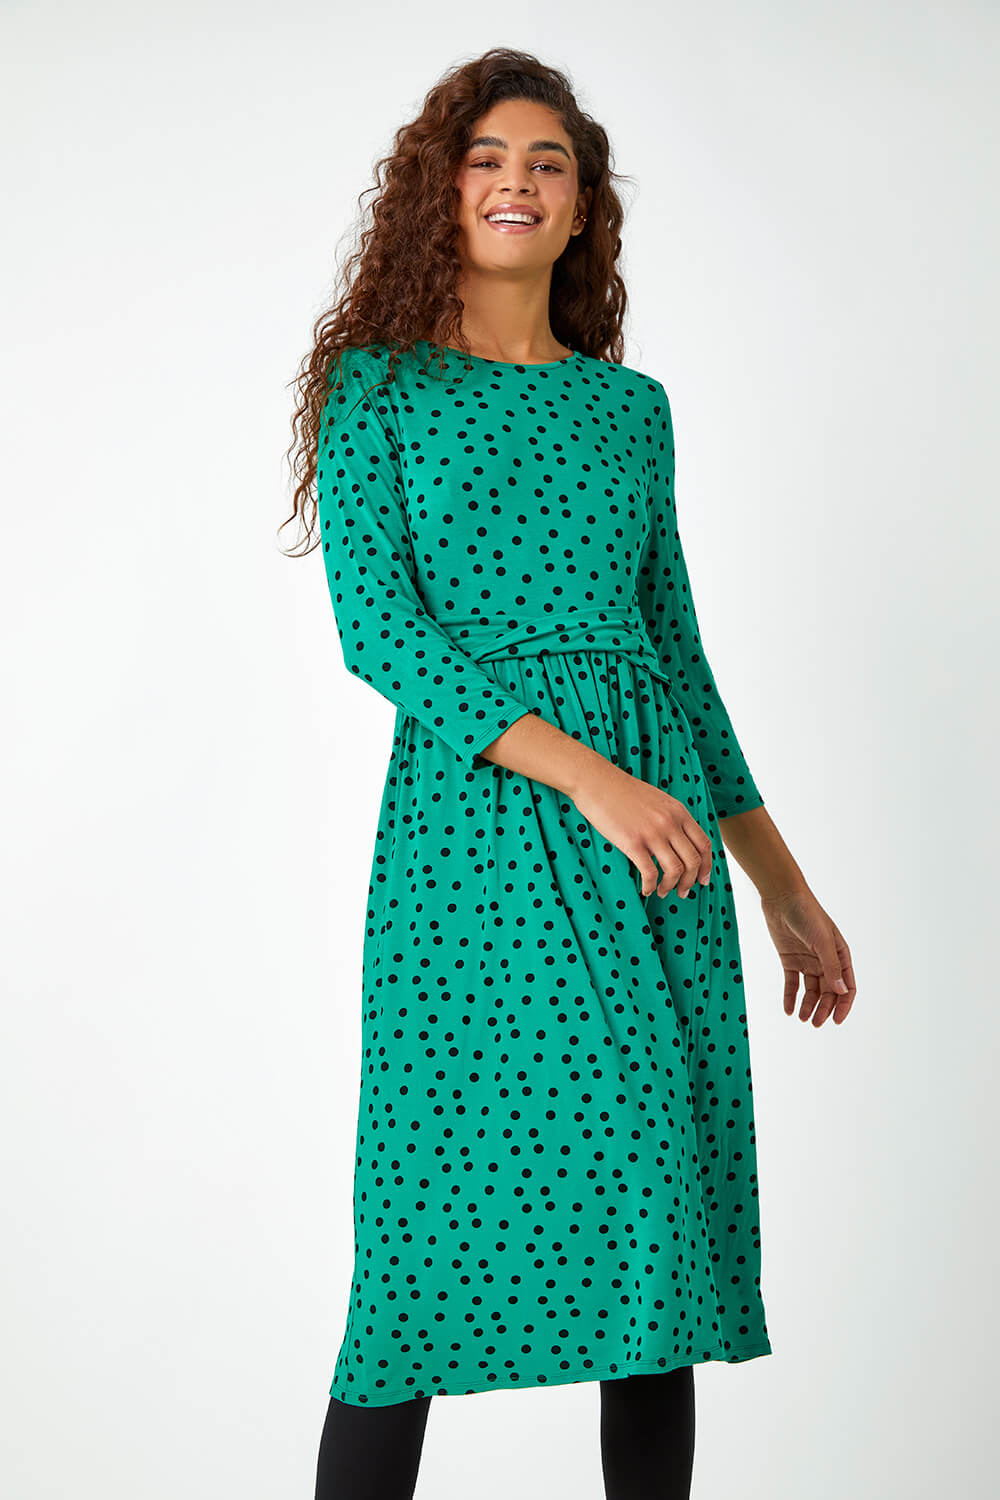 Green Twist Waist Spot Print Stretch Dress, Image 2 of 5